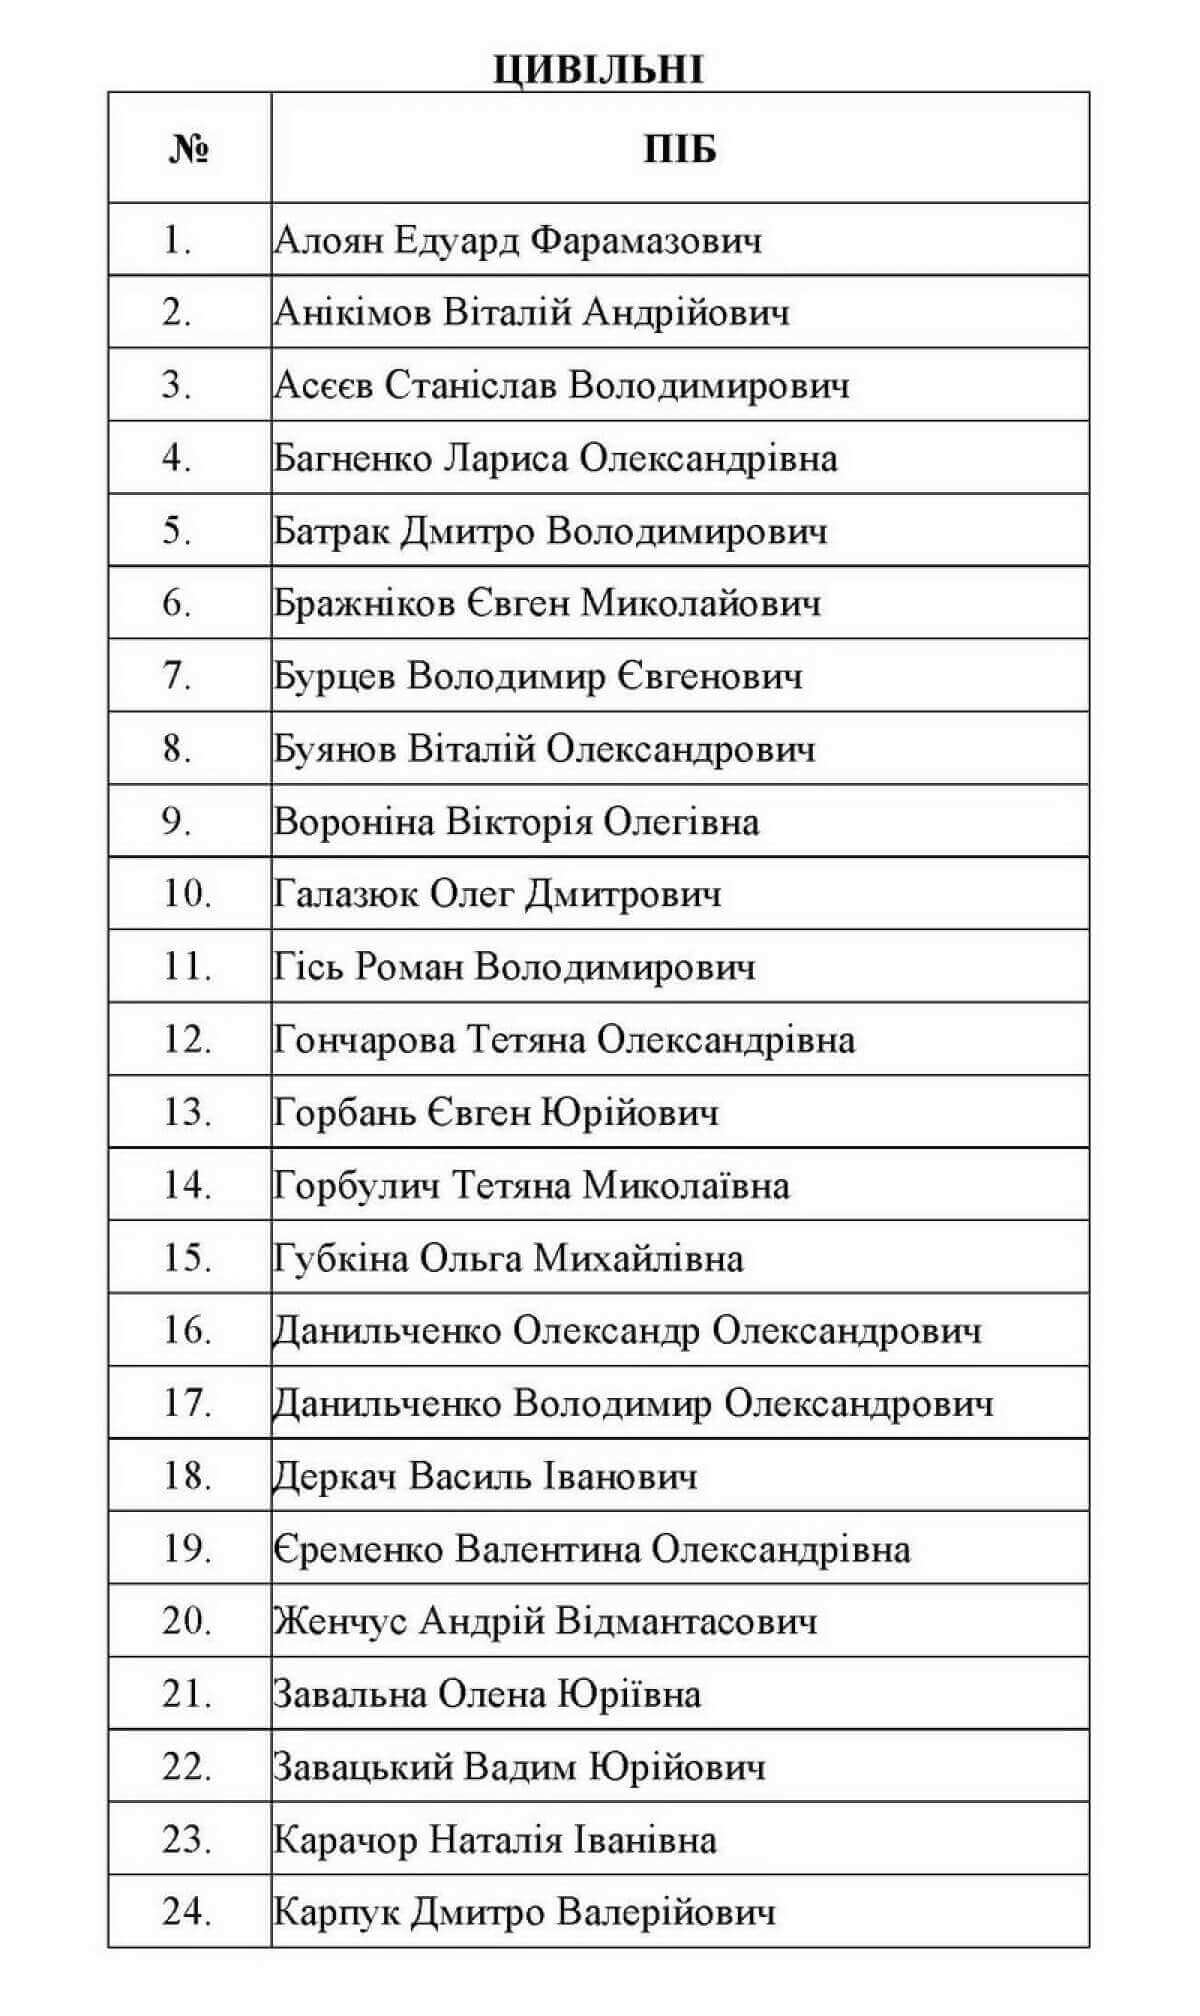 Список обмена погибших. Список освобожденных. Списки пленных украинцев. Список фамилий. Фамилии освобожденных пленных на Украине.